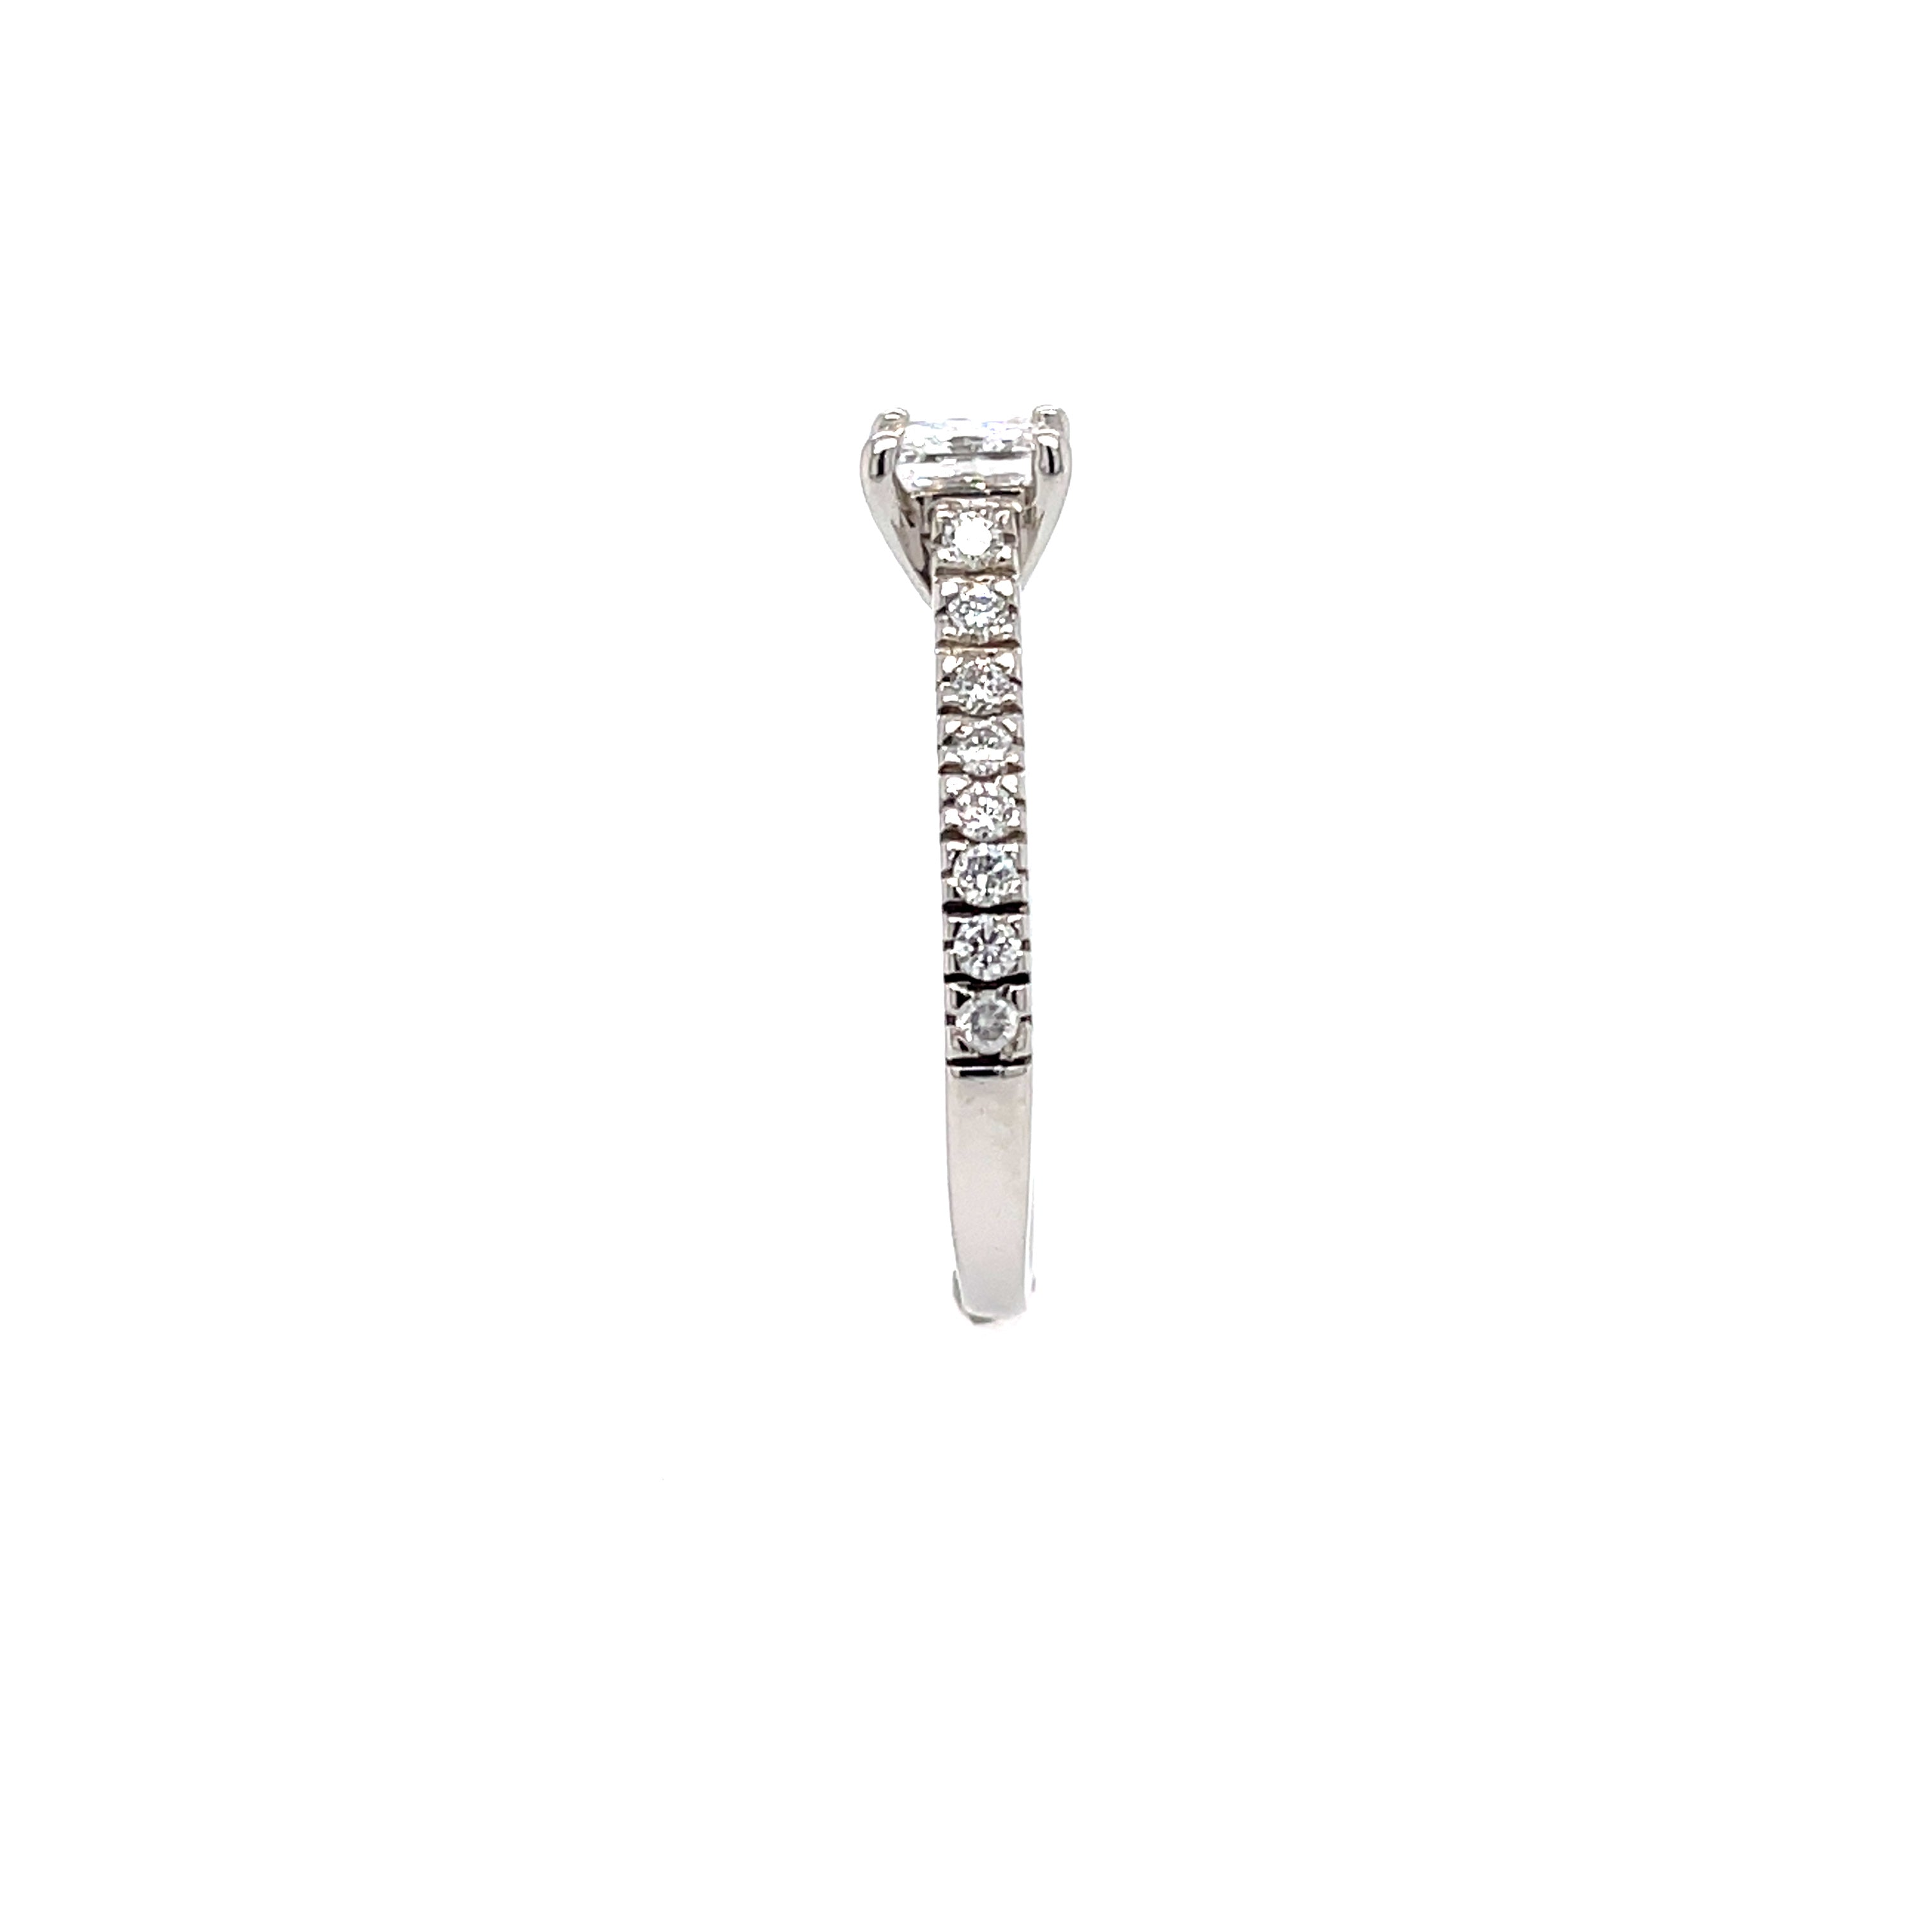 Platinum 0.67ct Princess Cut Diamond Solitaire Engagement Ring Certified D/E VS